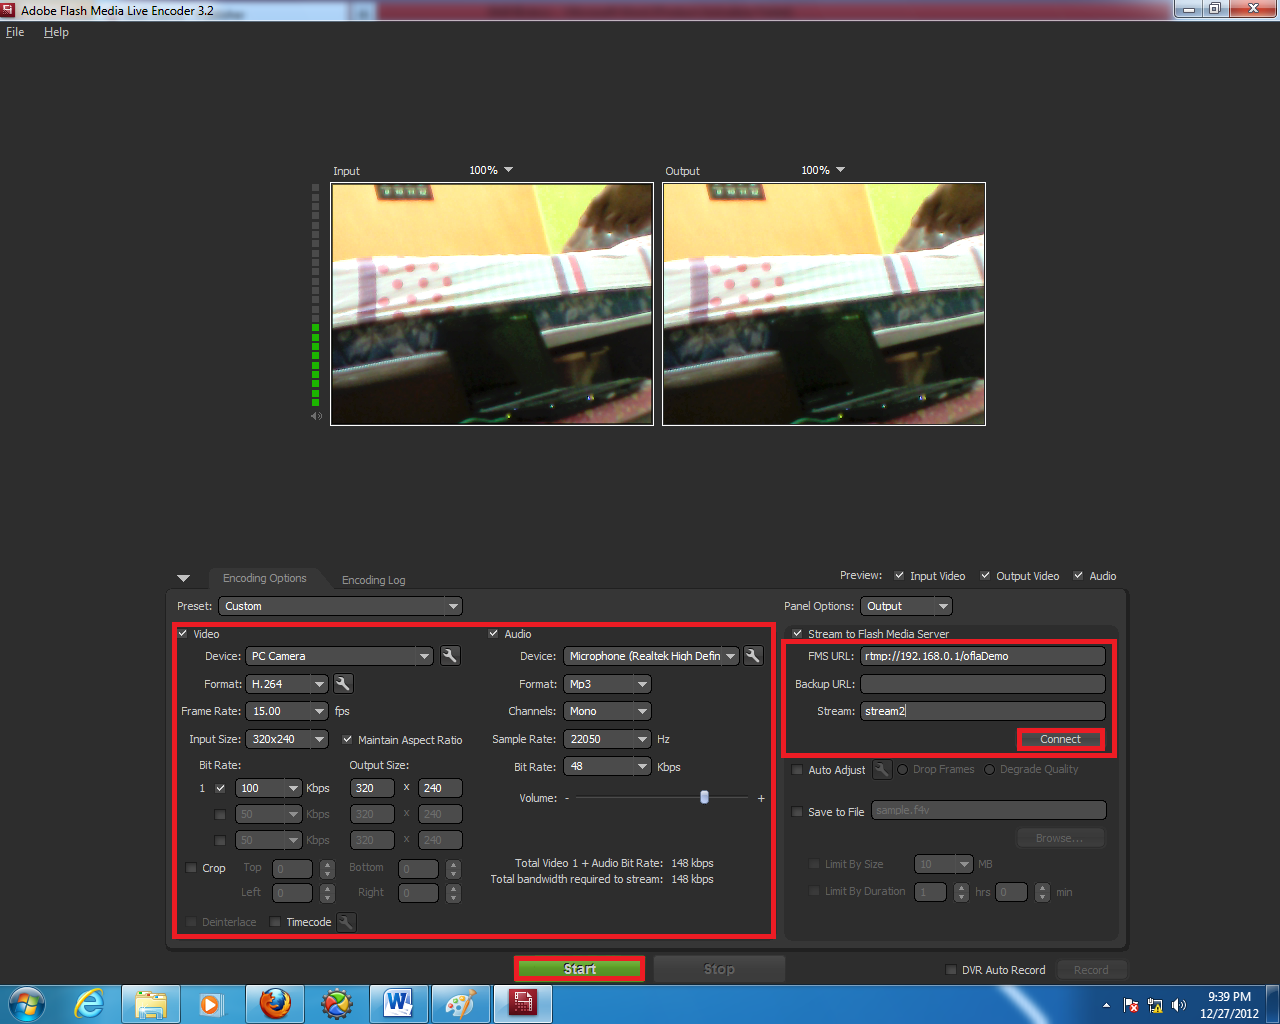 Pengaturan pada Adobe Flash Media Live Encoder